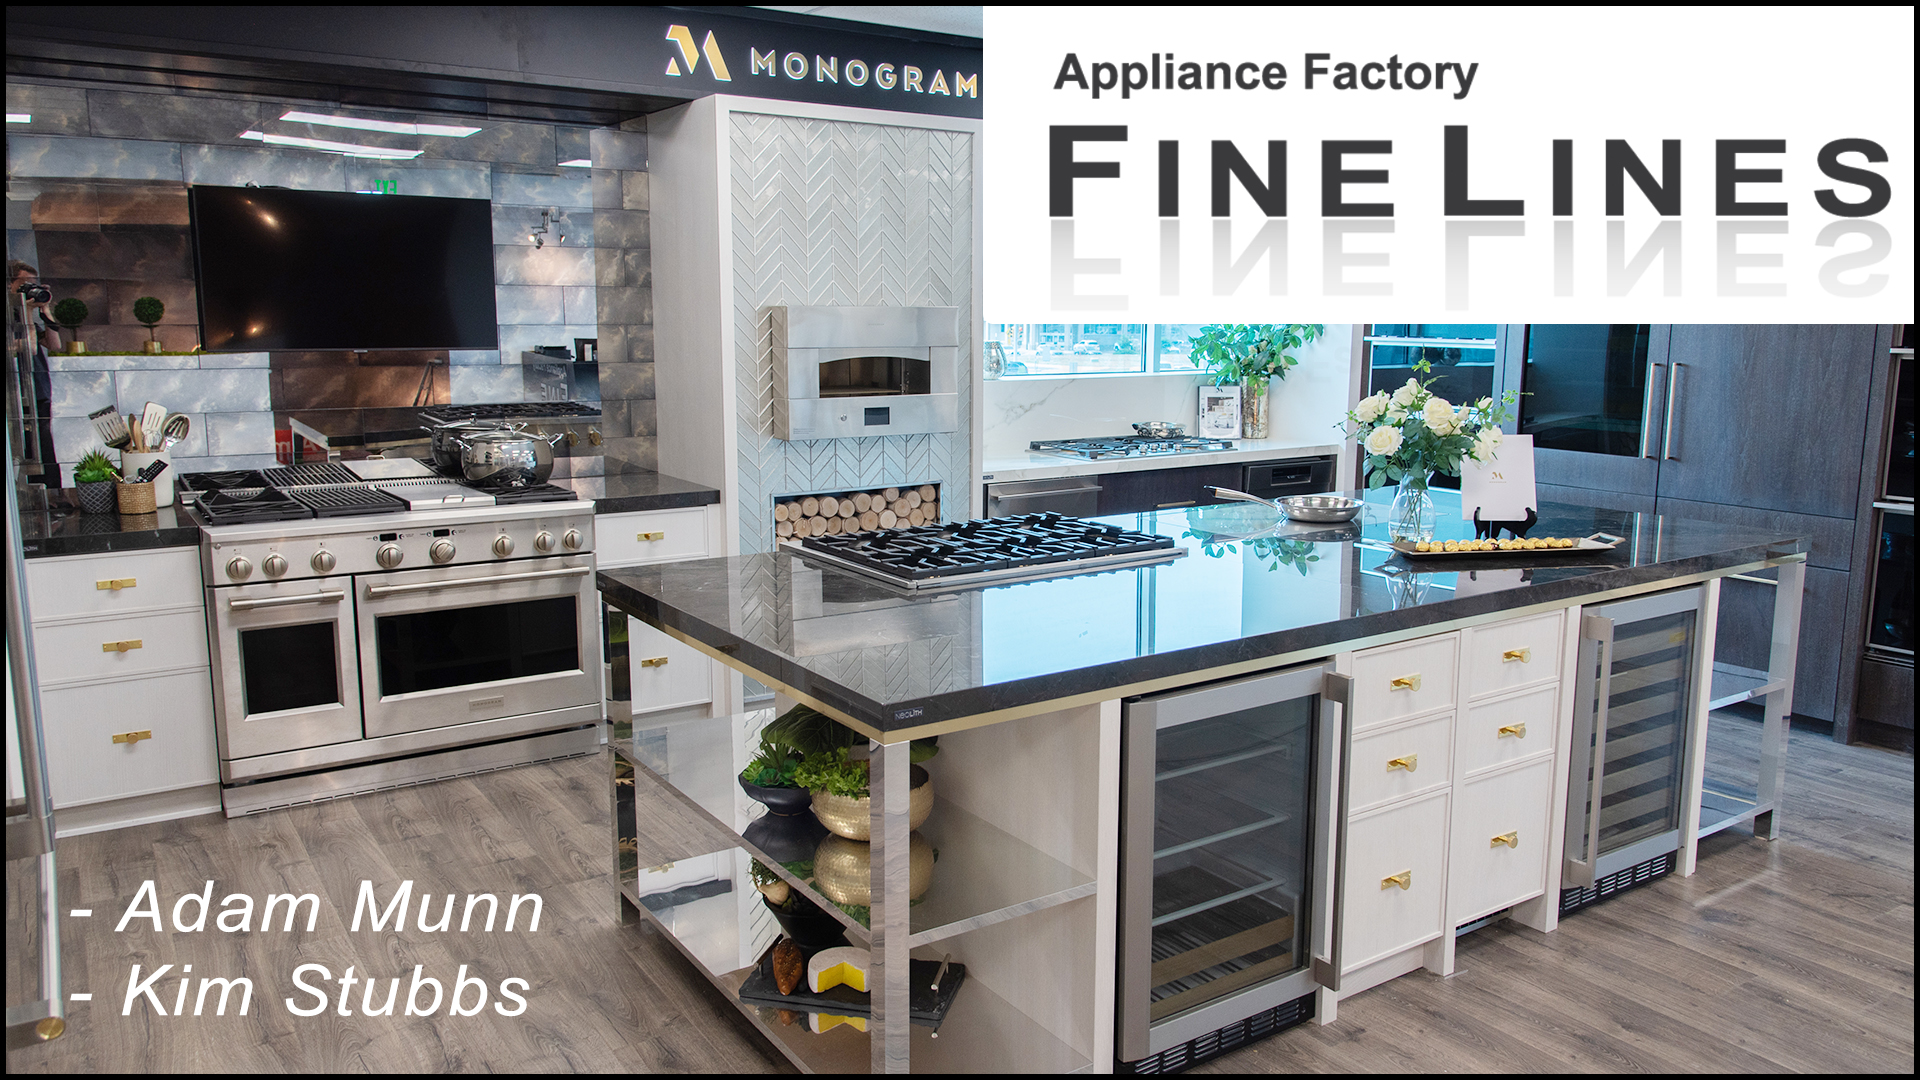 Adam Munn & Kim Stubbs from Appliance Factory Fine Lines